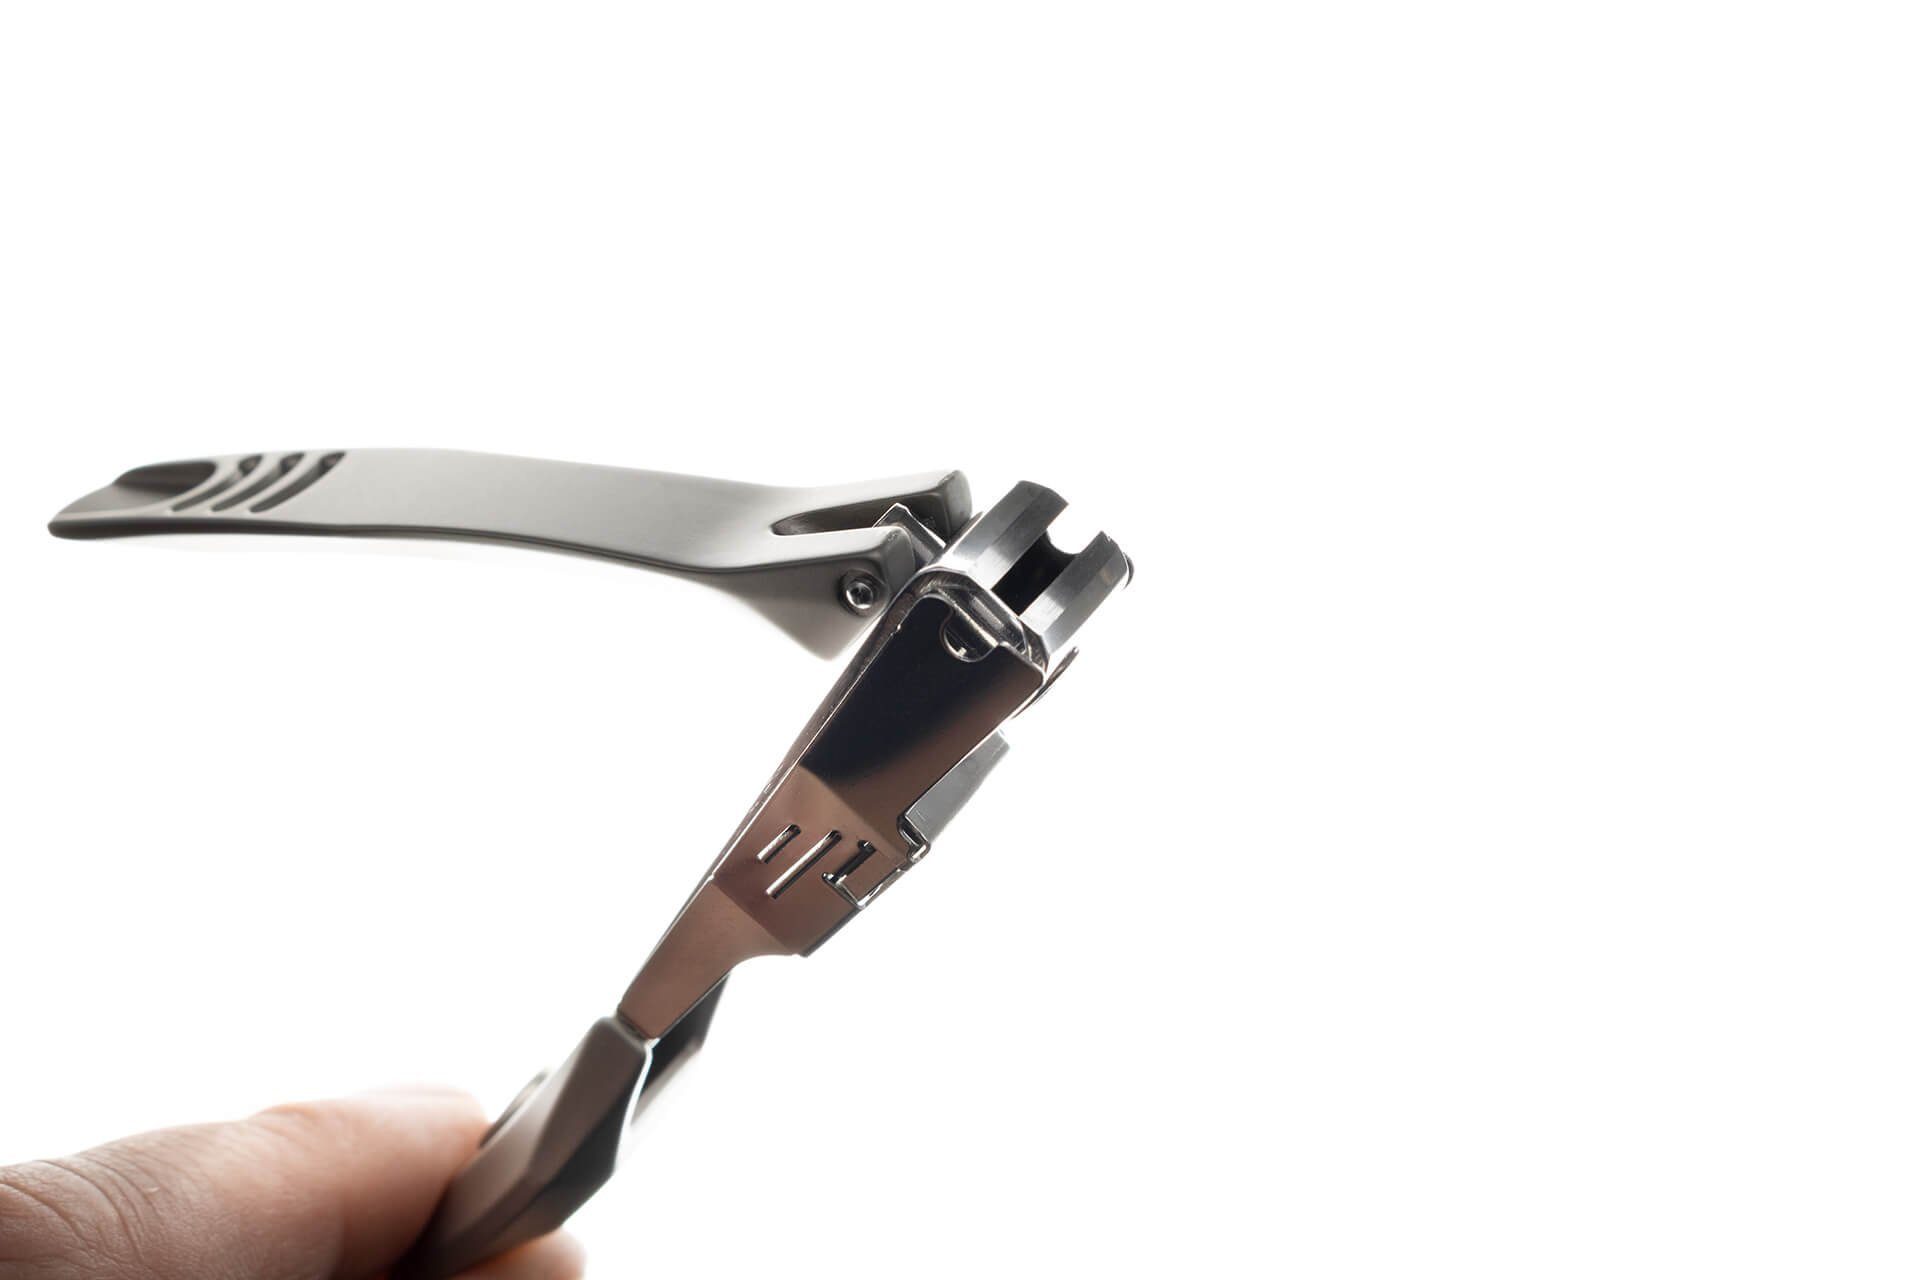 Seki EDGE Nagelknipser Großer aus Auffangvorrichtung Japan G-1305 Qualitätsprodukt cm, mit Nagelknipser handgeschärftes 9.2x0.8x0.6